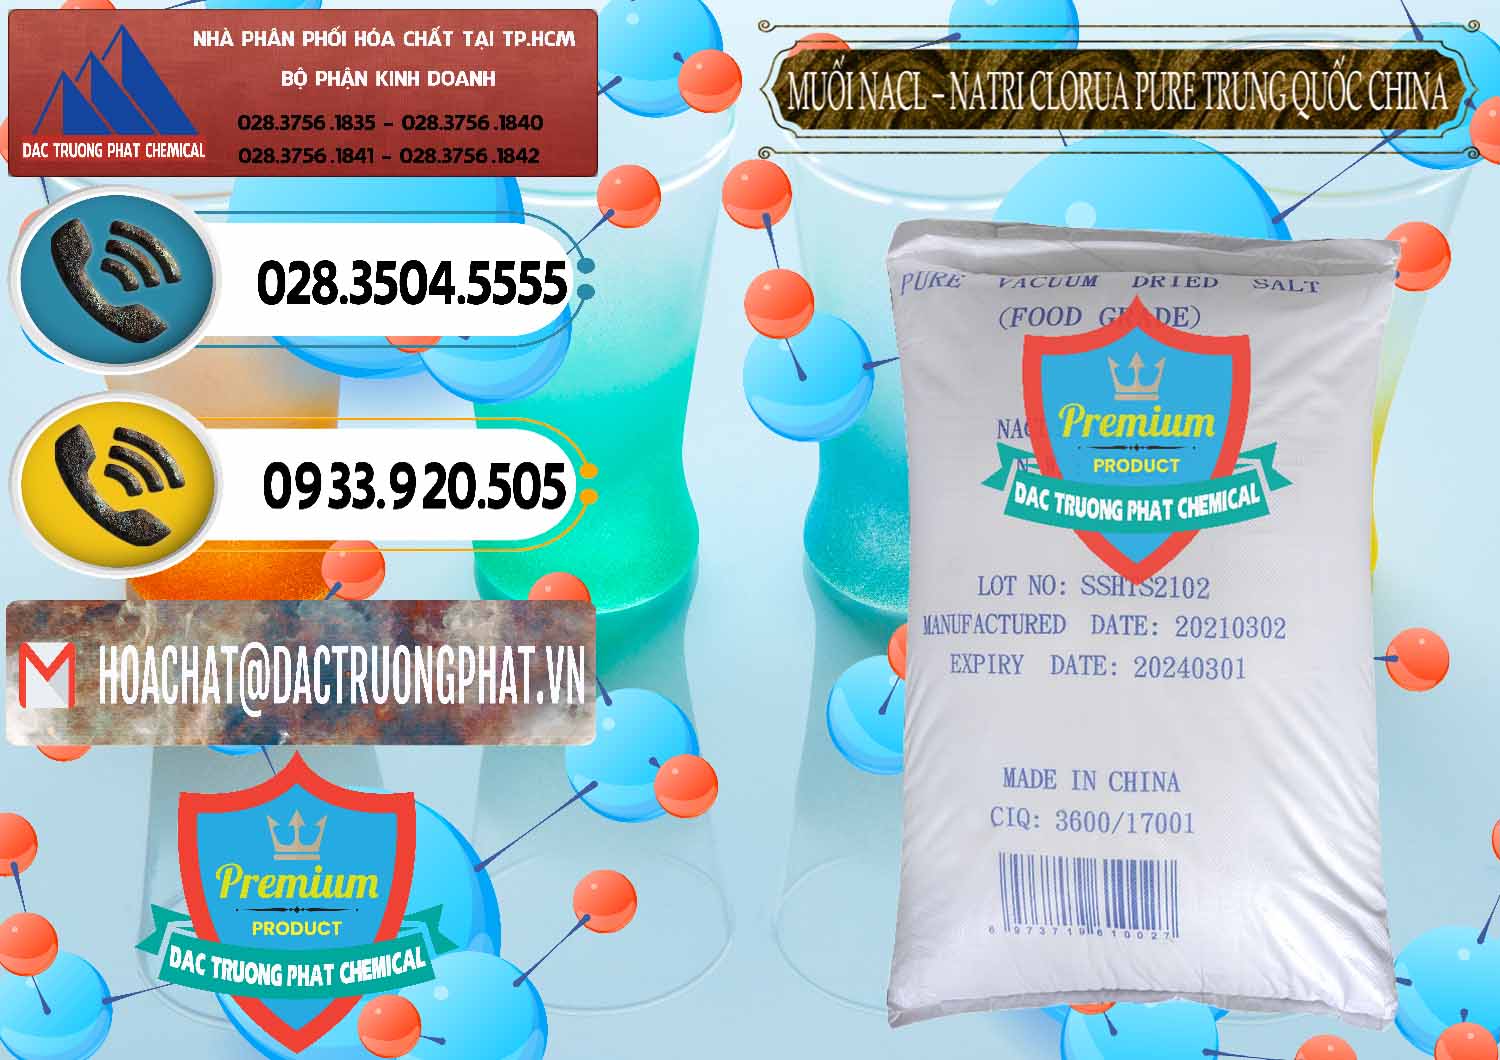 Đơn vị chuyên bán và cung ứng Muối NaCL – Sodium Chloride Pure Trung Quốc China - 0230 - Đơn vị bán và phân phối hóa chất tại TP.HCM - hoachatdetnhuom.vn